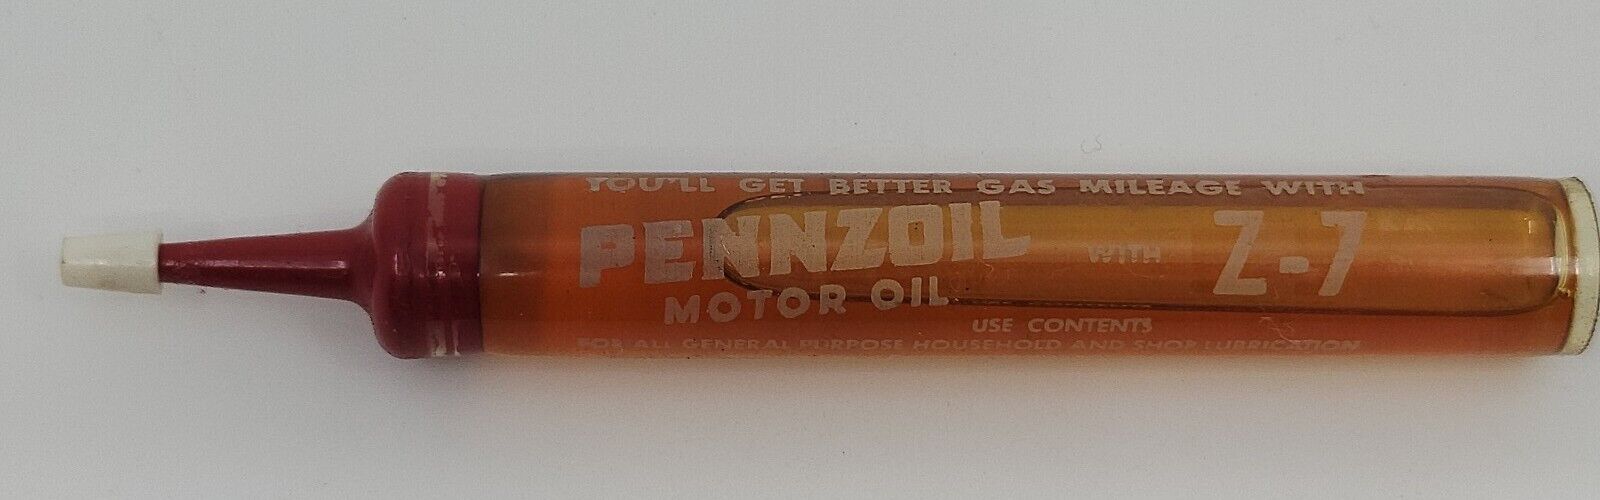 VINTAGE PENNZOIL MOTOR OIL Z-7 SALESMAN SAMPLE PEN TUBE Advertising Gas & Oil